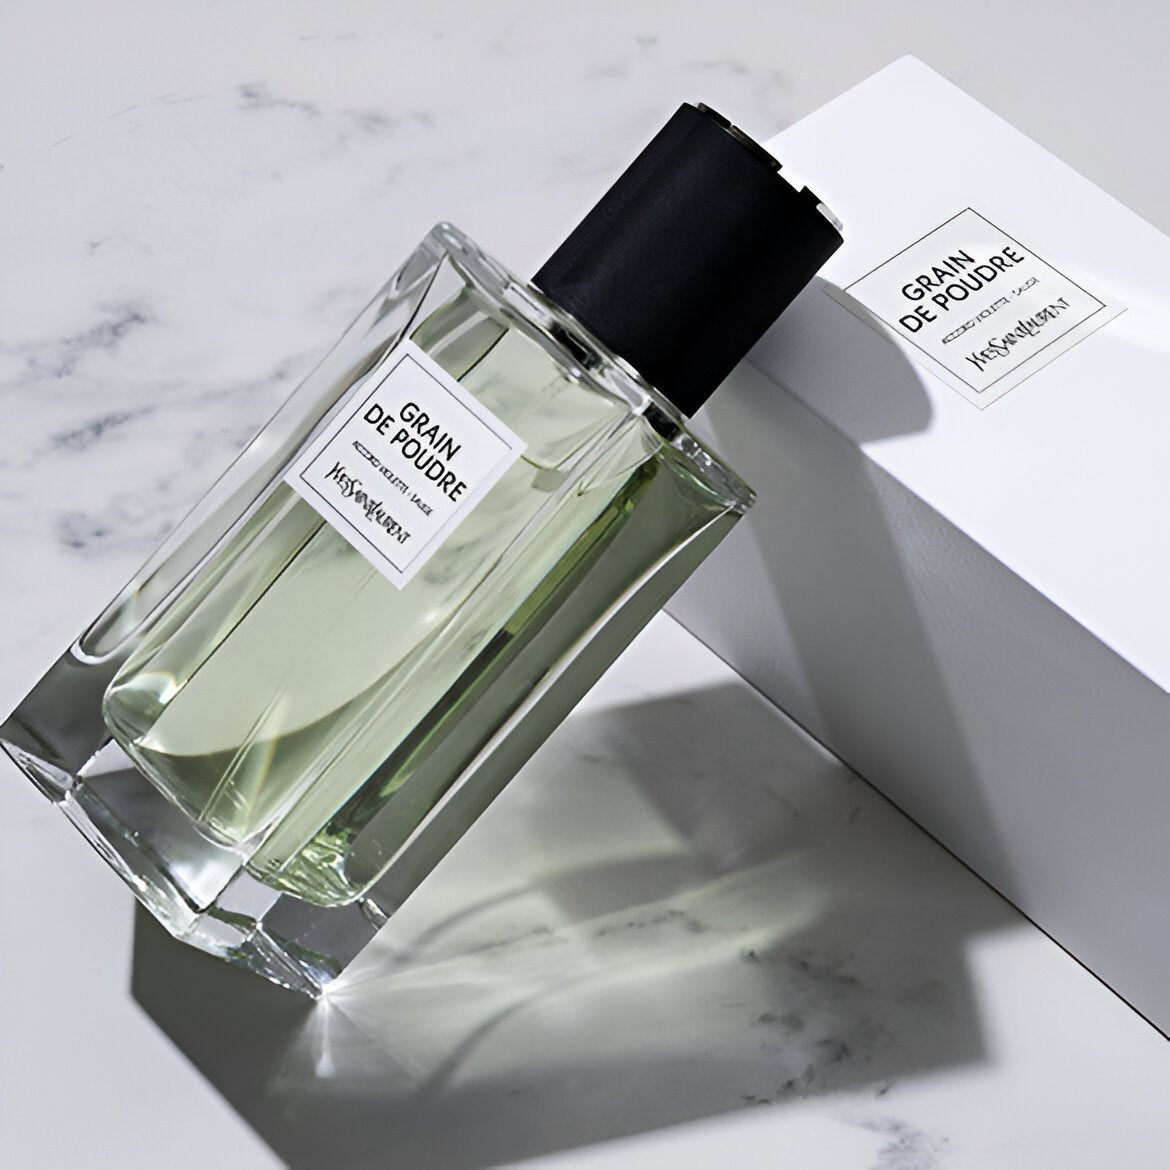 Yves Saint Laurent Le Vestiaire Des Grain De Poudre EDP | My Perfume Shop Australia